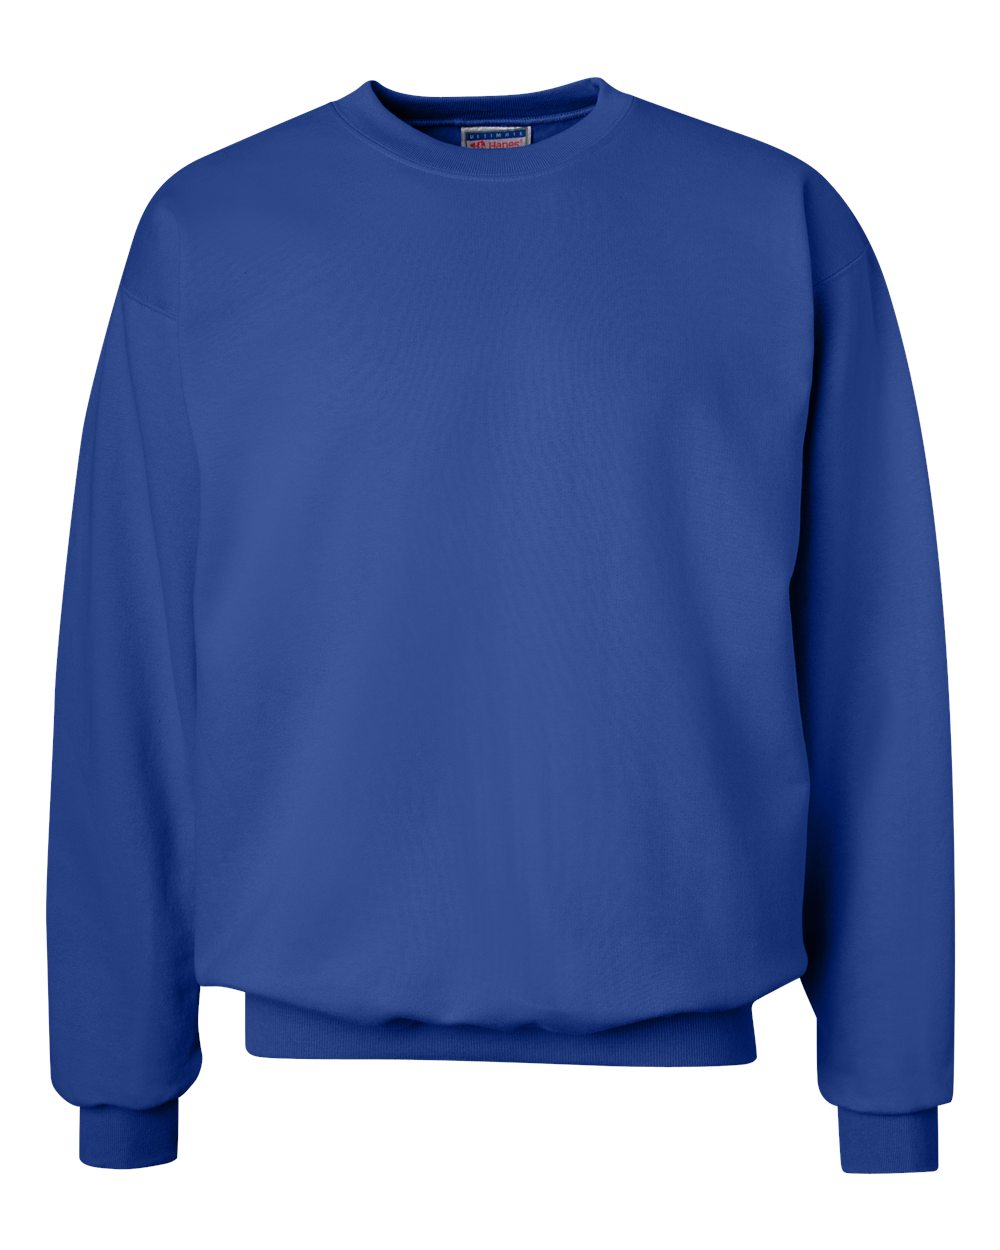 Hanes F260 - Ultimate Cotton® Crewneck Sweatshirt